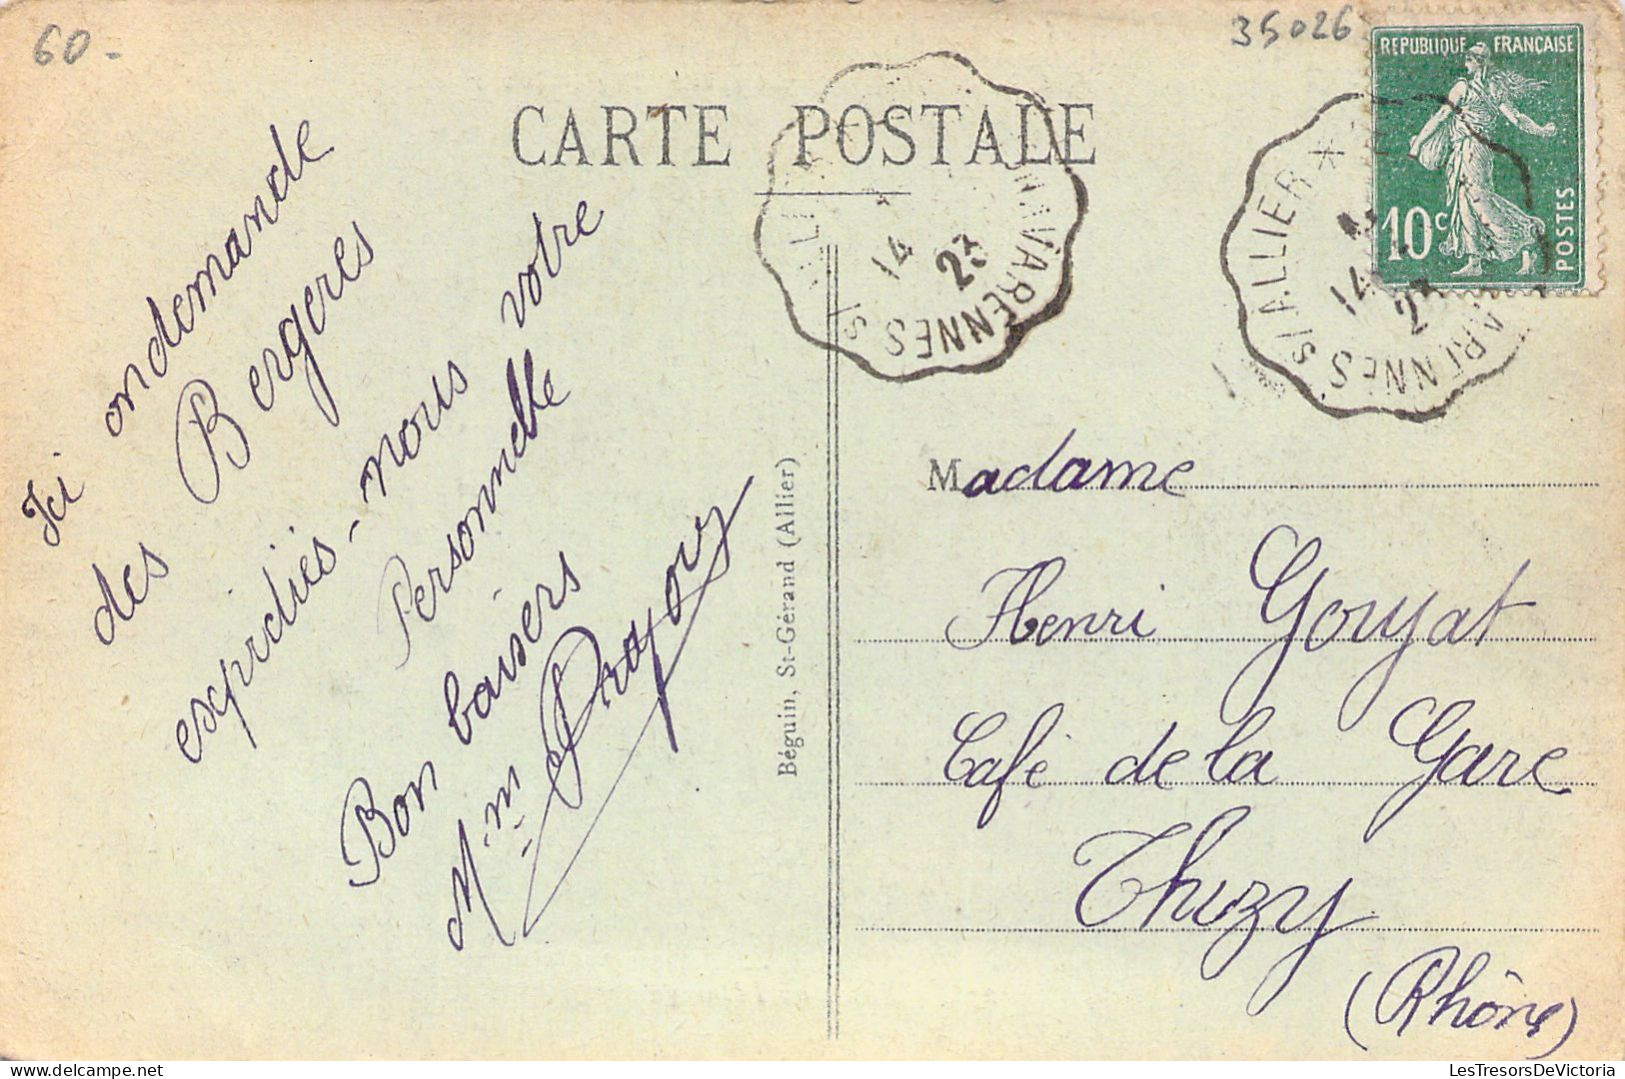 AGRICULTURE - ELEVAGE - La Campage Bourbonnaise - Boeufs Au Pâturage - Carte Postale Ancienne - Elevage